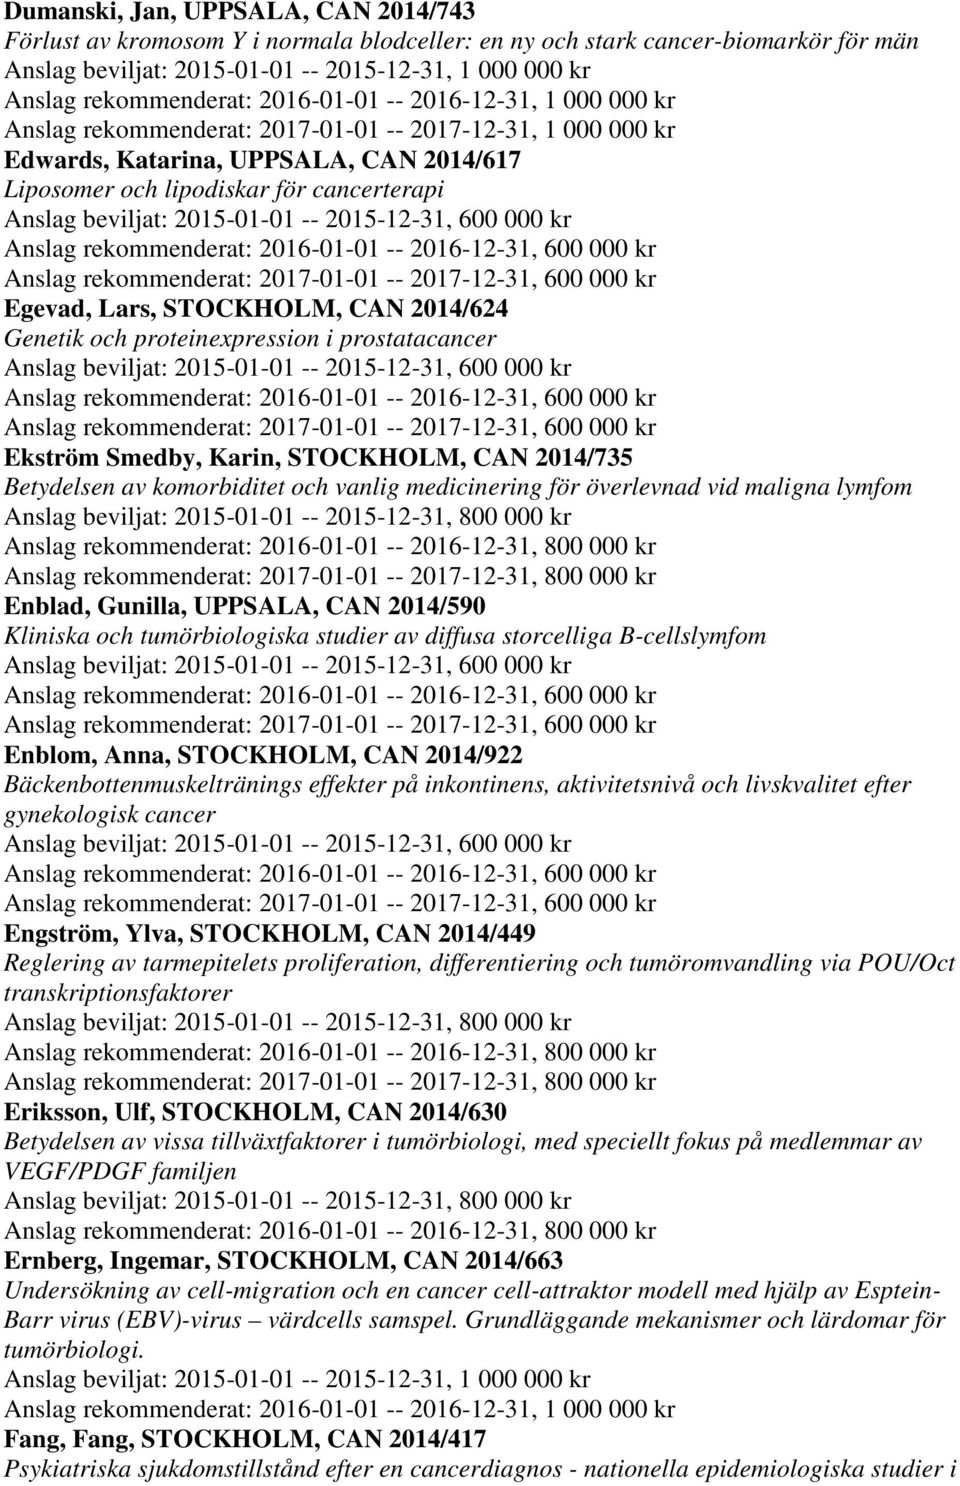 överlevnad vid maligna lymfom Enblad, Gunilla, UPPSALA, CAN 2014/590 Kliniska och tumörbiologiska studier av diffusa storcelliga B-cellslymfom Enblom, Anna, STOCKHOLM, CAN 2014/922